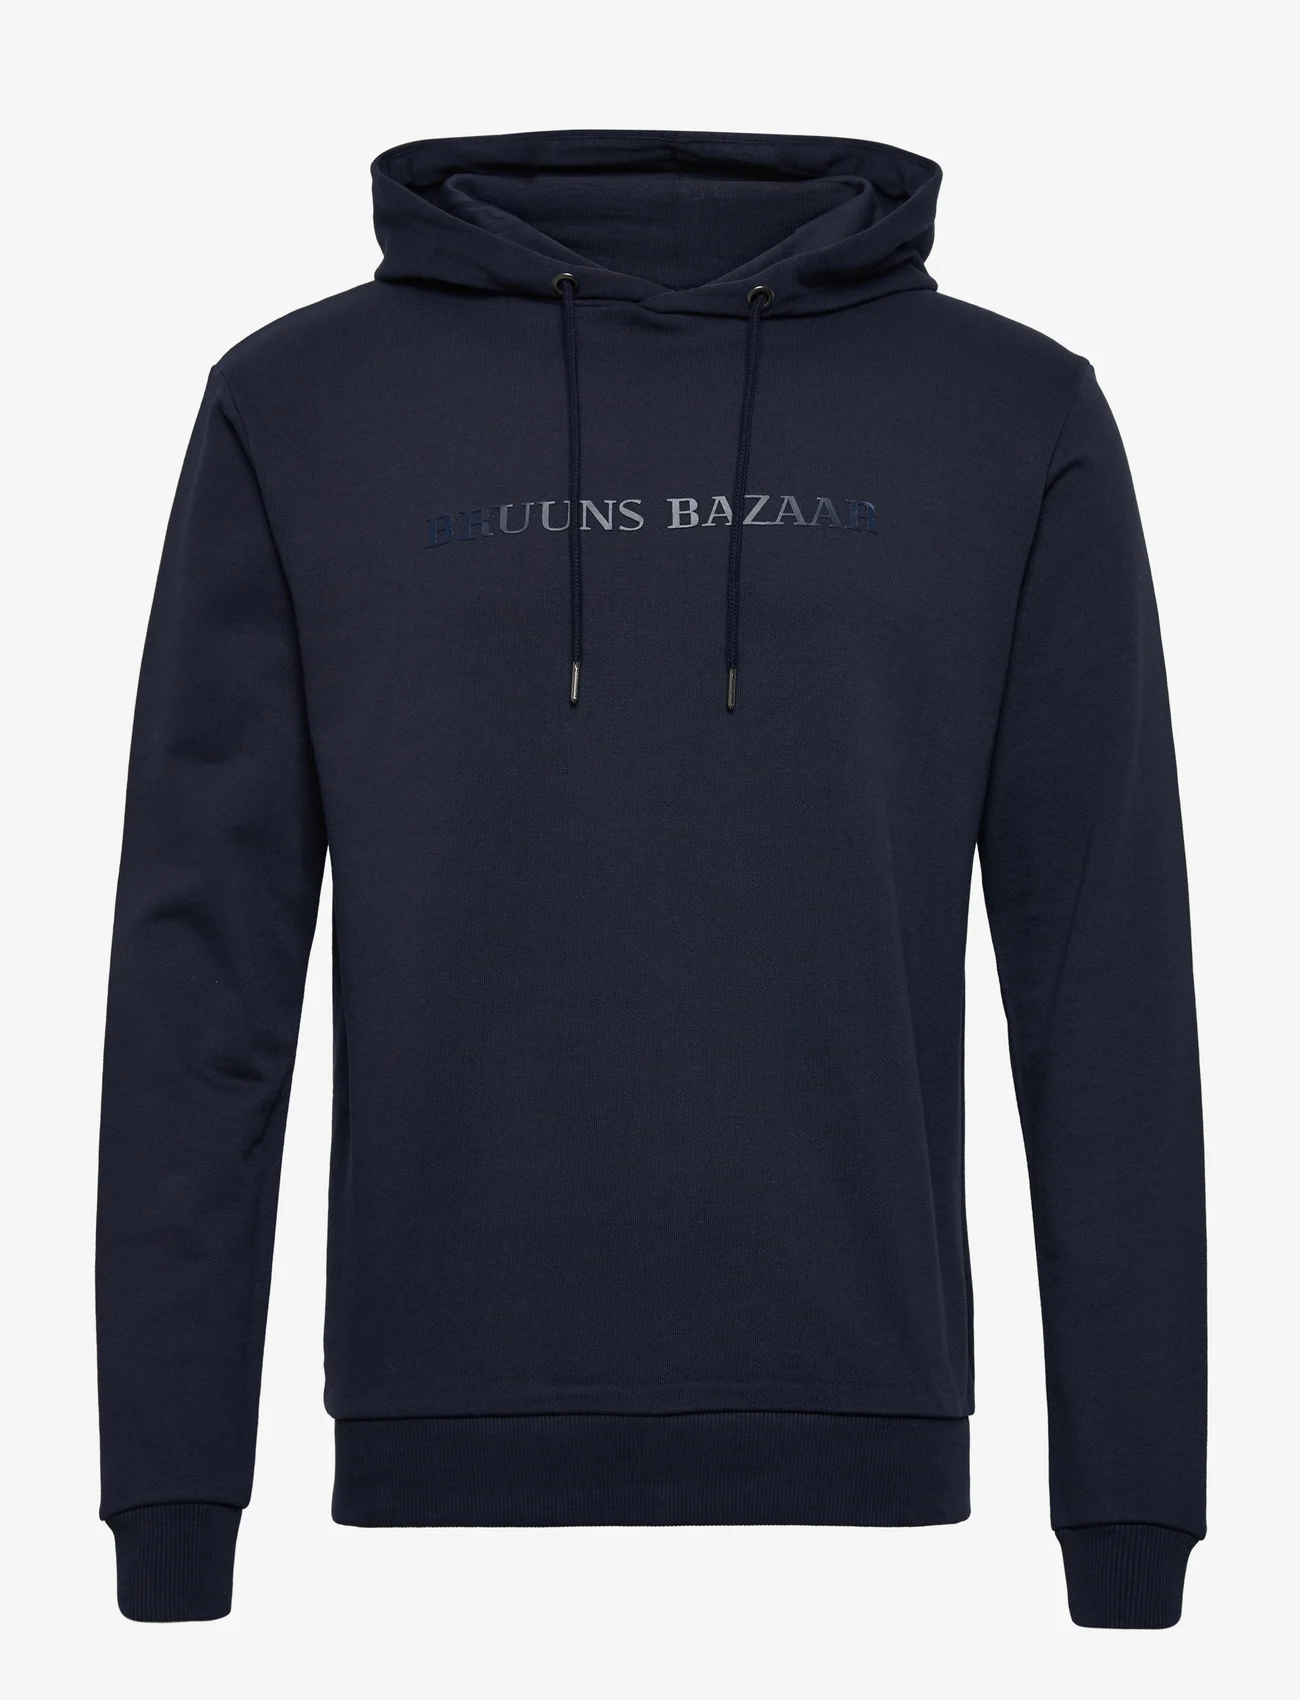 Bruuns Bazaar - BertilBB hoodie - navy - 0